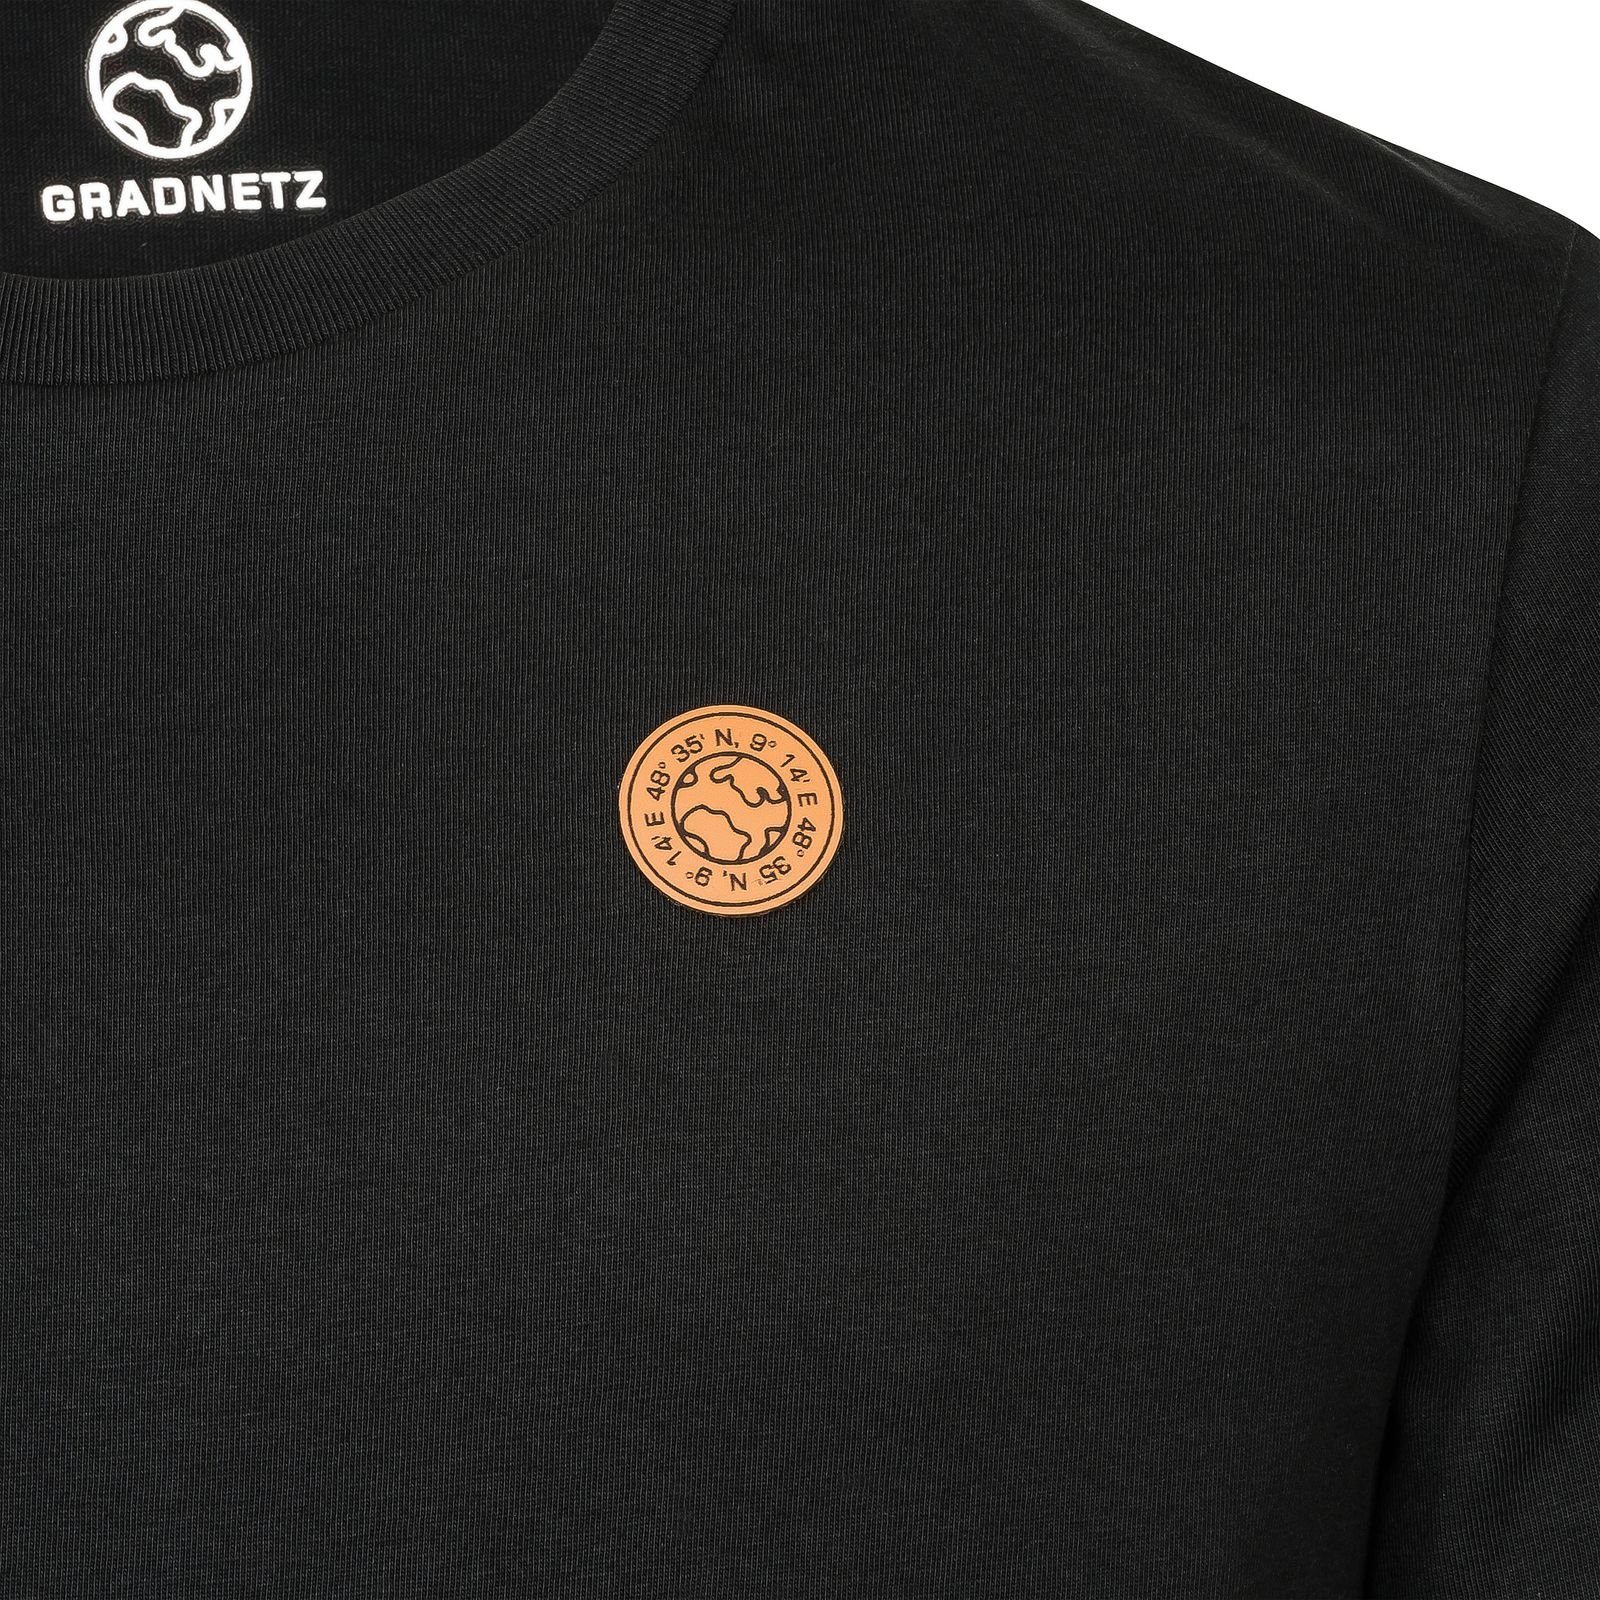 nachhaltig T-Shirt fair 100% schwarz Biobaumwolle & leather basic Gradnetz unisex